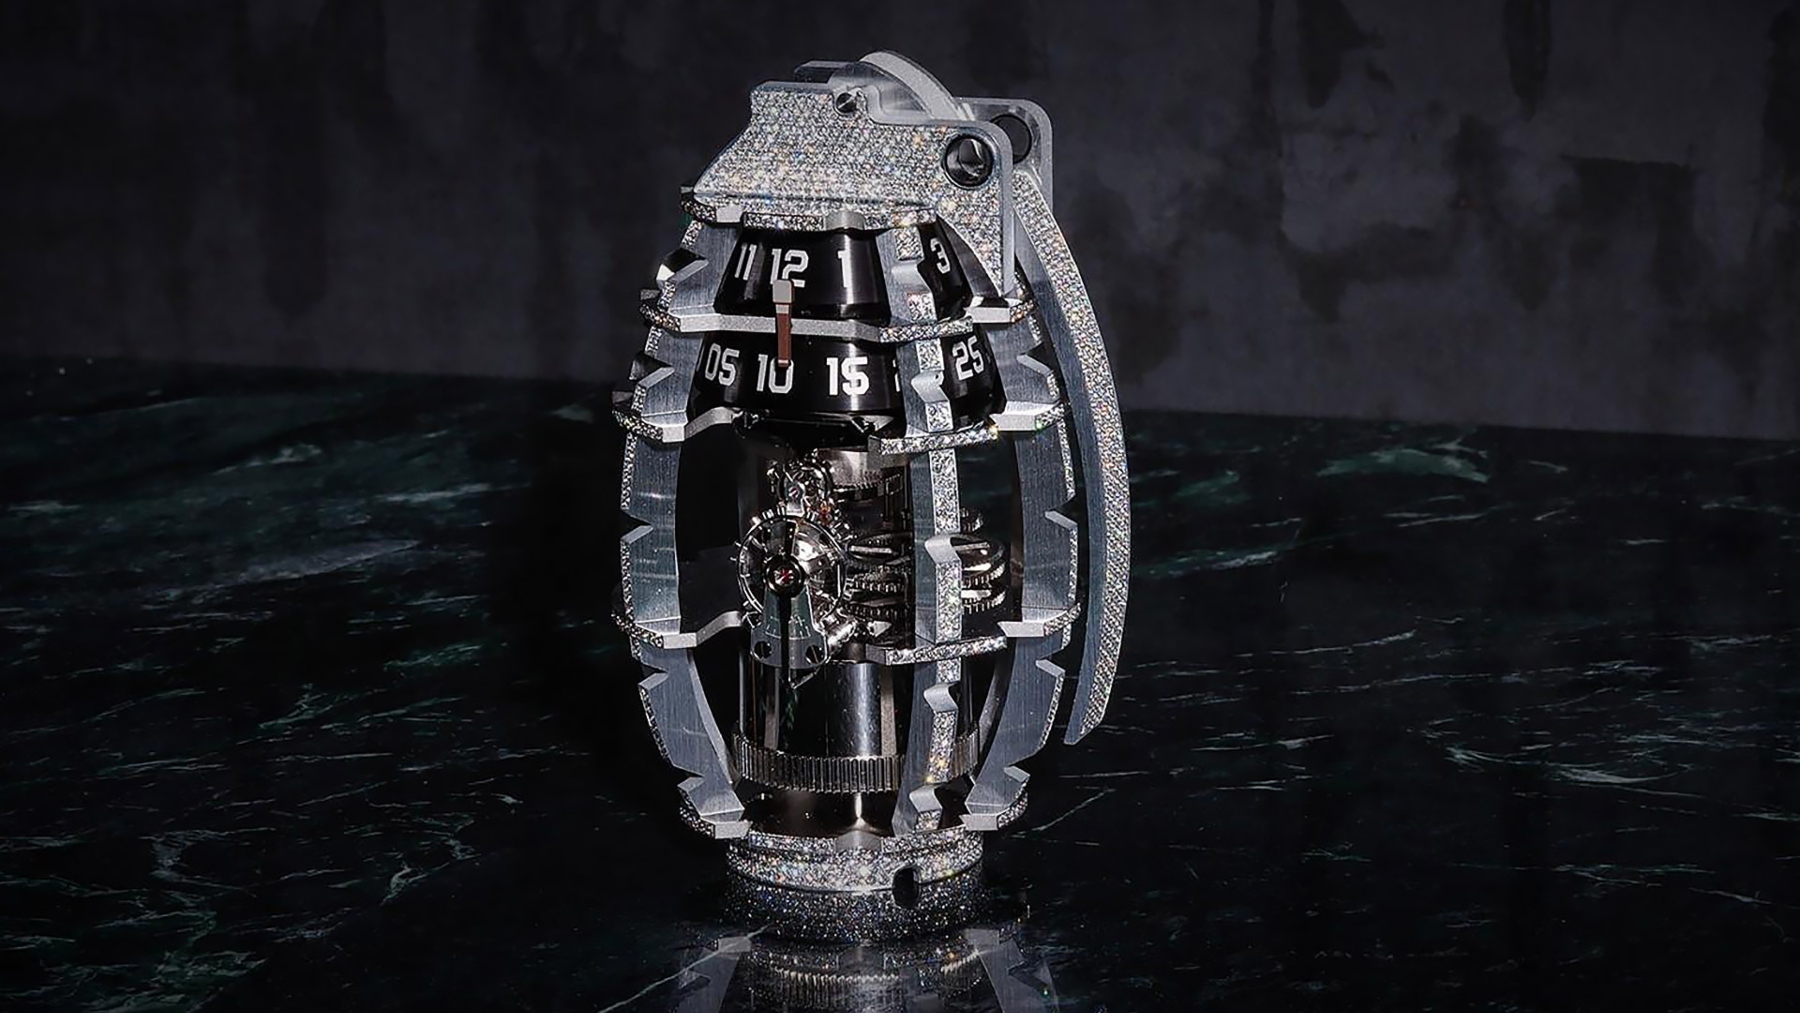 El sofisticado reloj de diamantes inspirado en una granada, una bomba de relojería